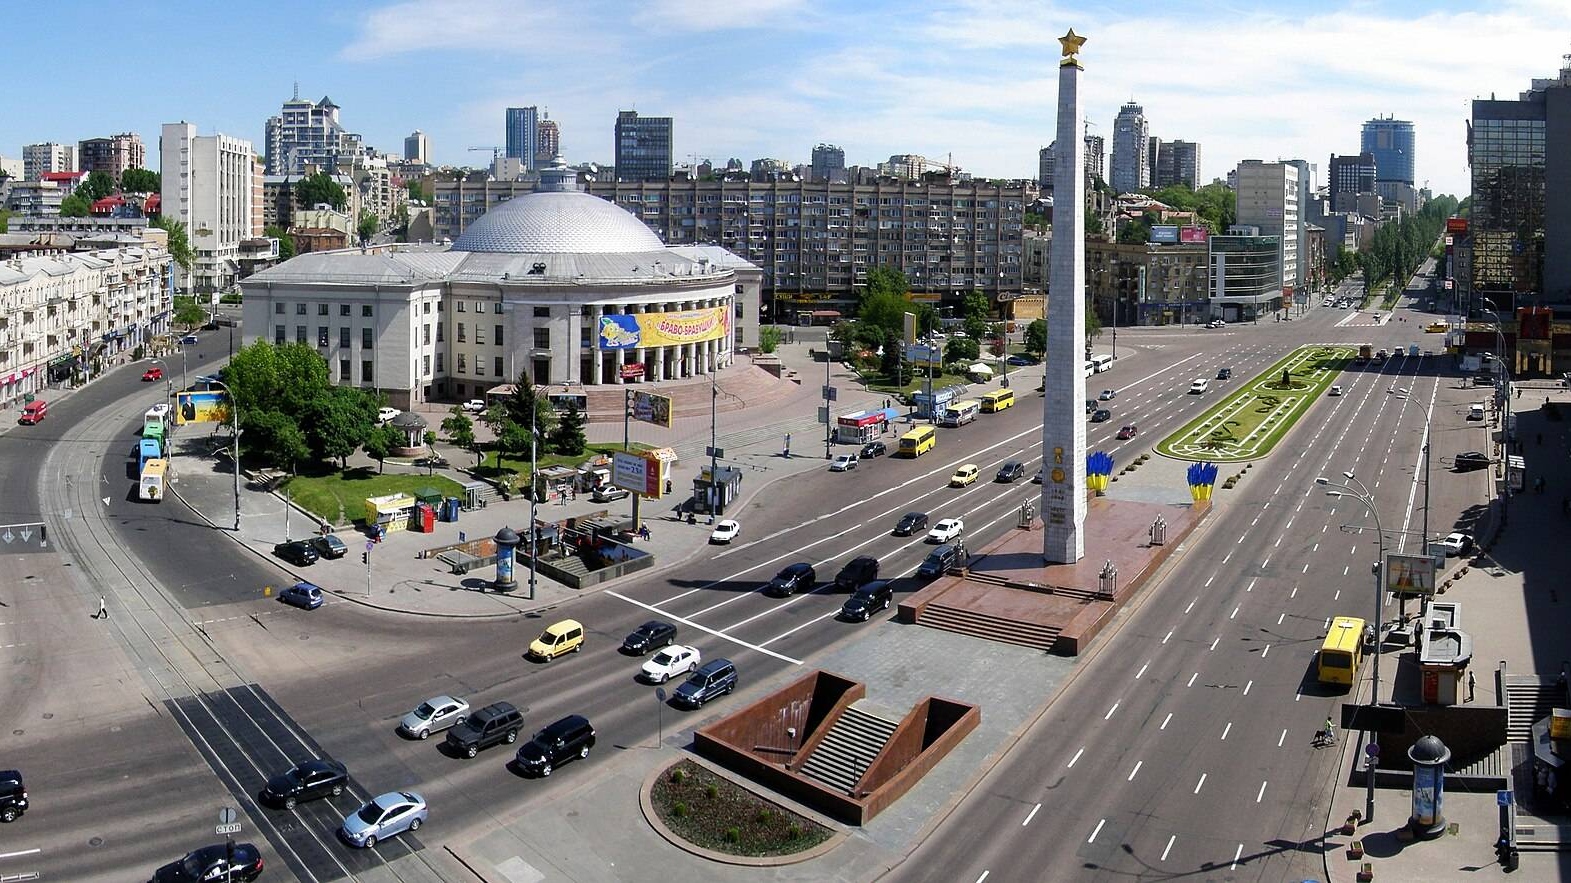 Обелиск на площади Победы (в наст. время пл. Галицкая) в Киеве. Украина